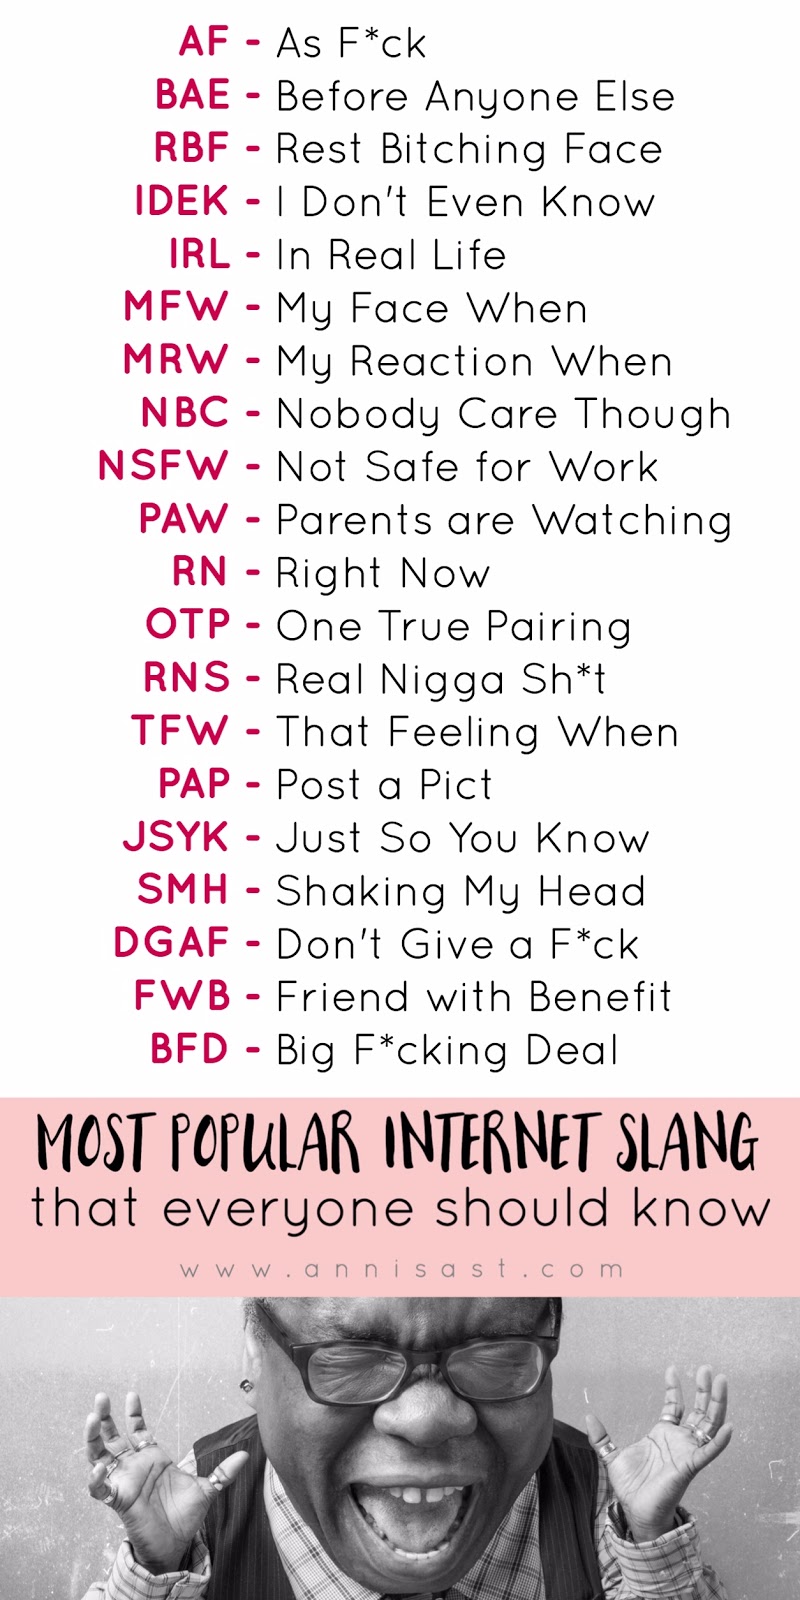 The Most Popular AF Internet Slang